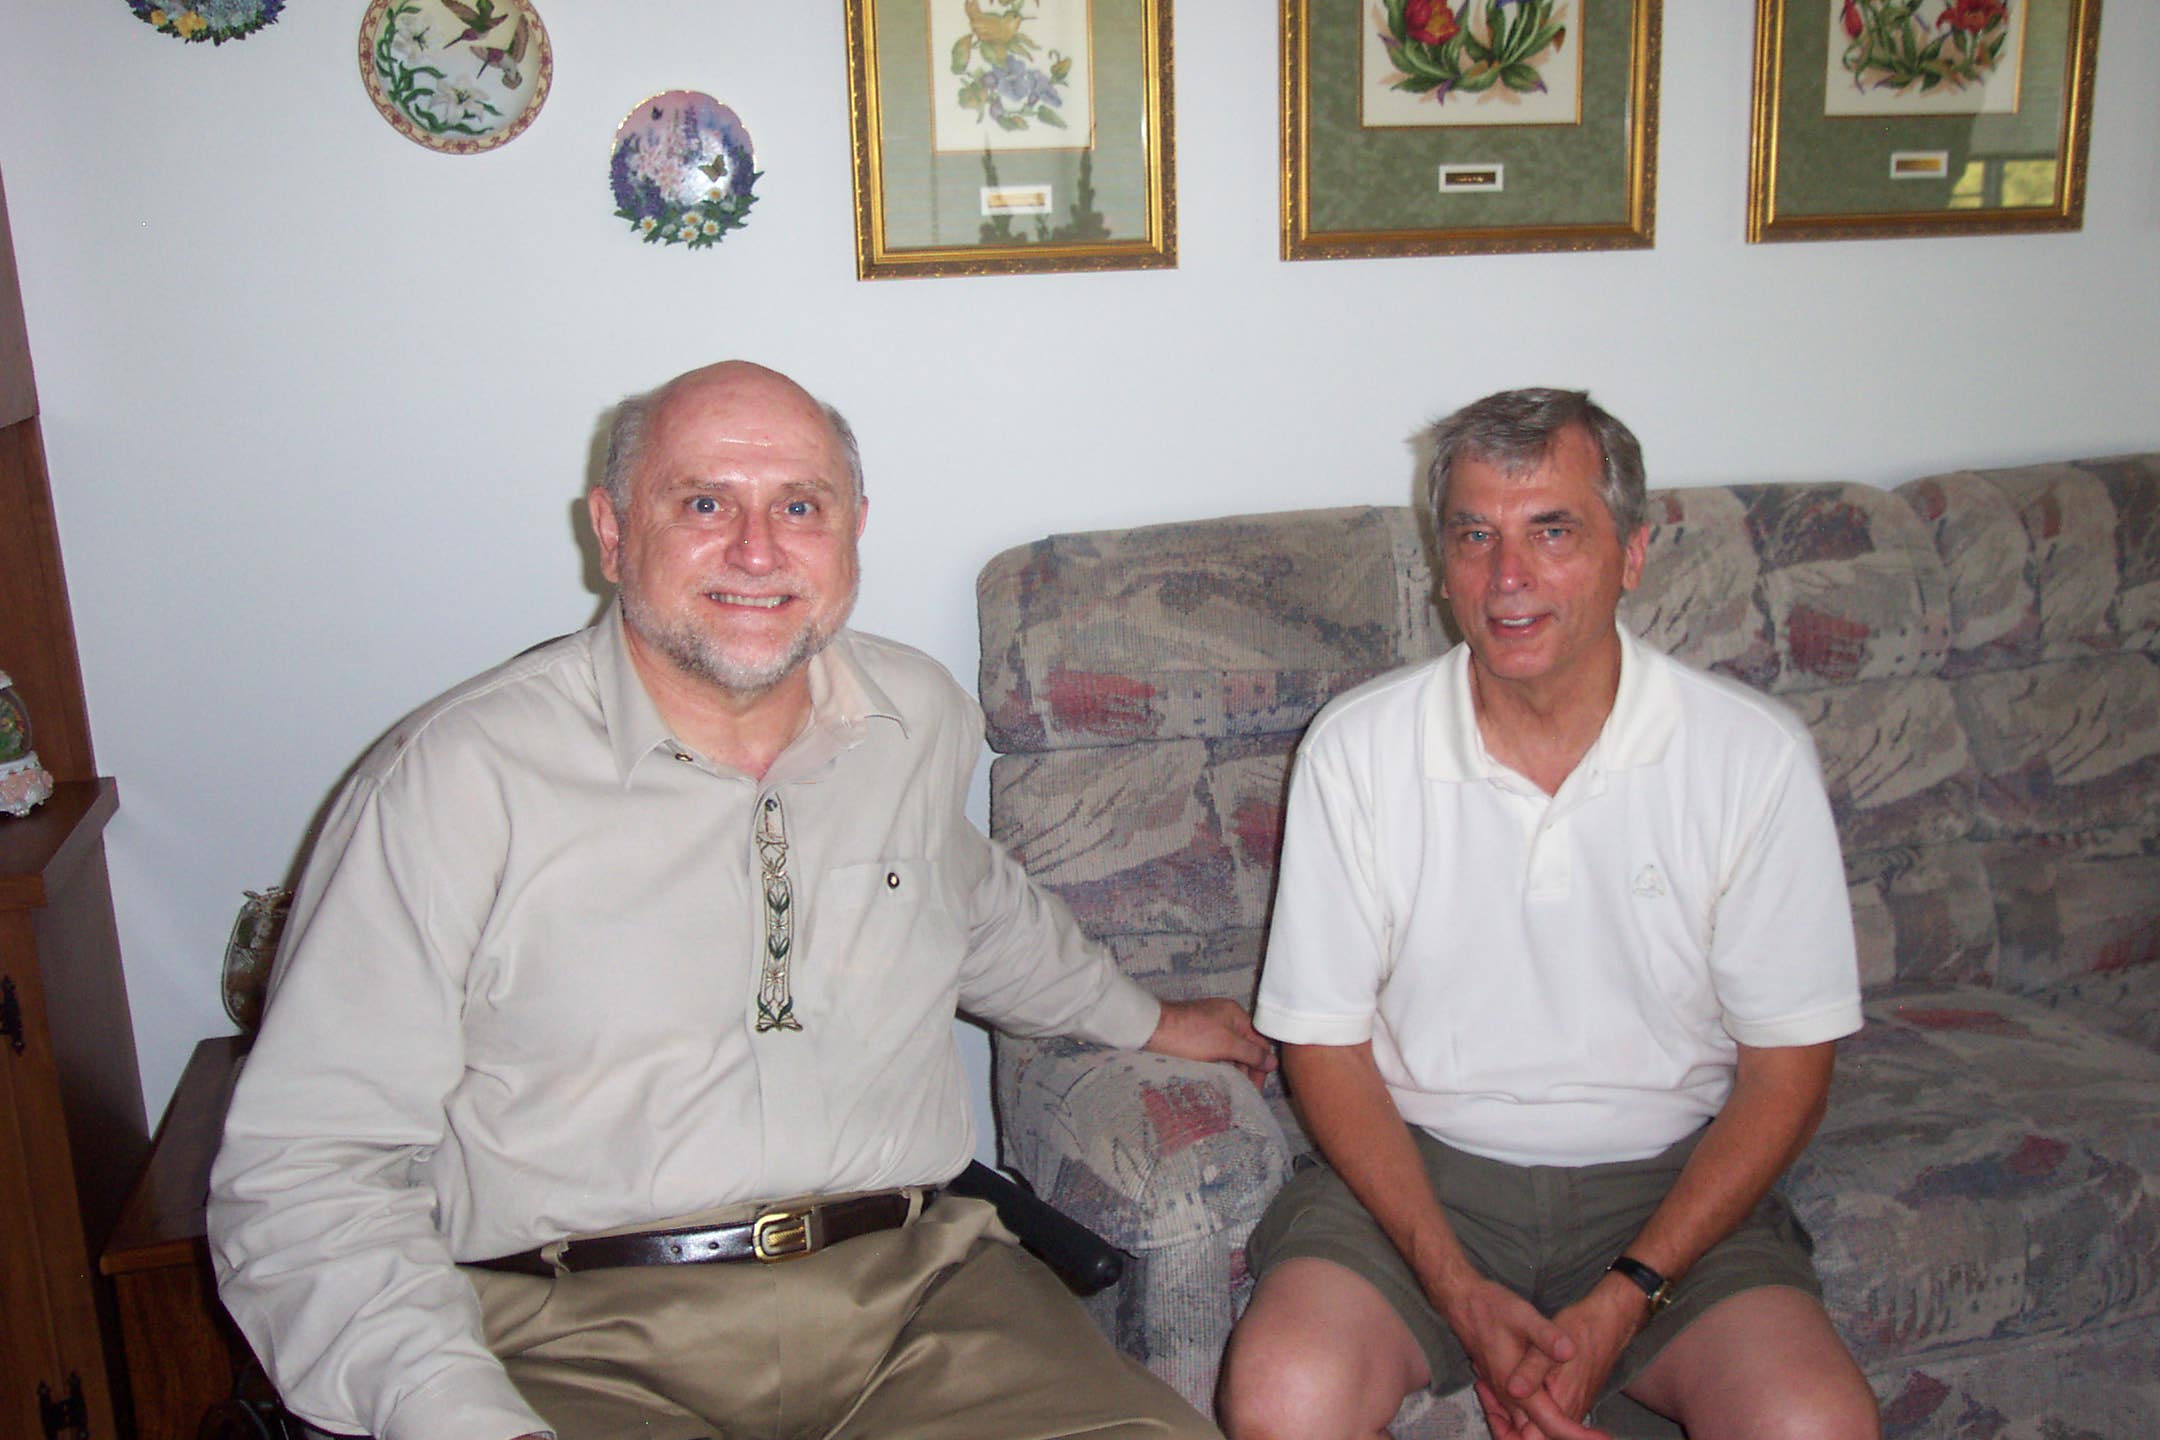 August 16, 2008, Charles and Bob at Joe and Fran's 60th wedding anniversary.